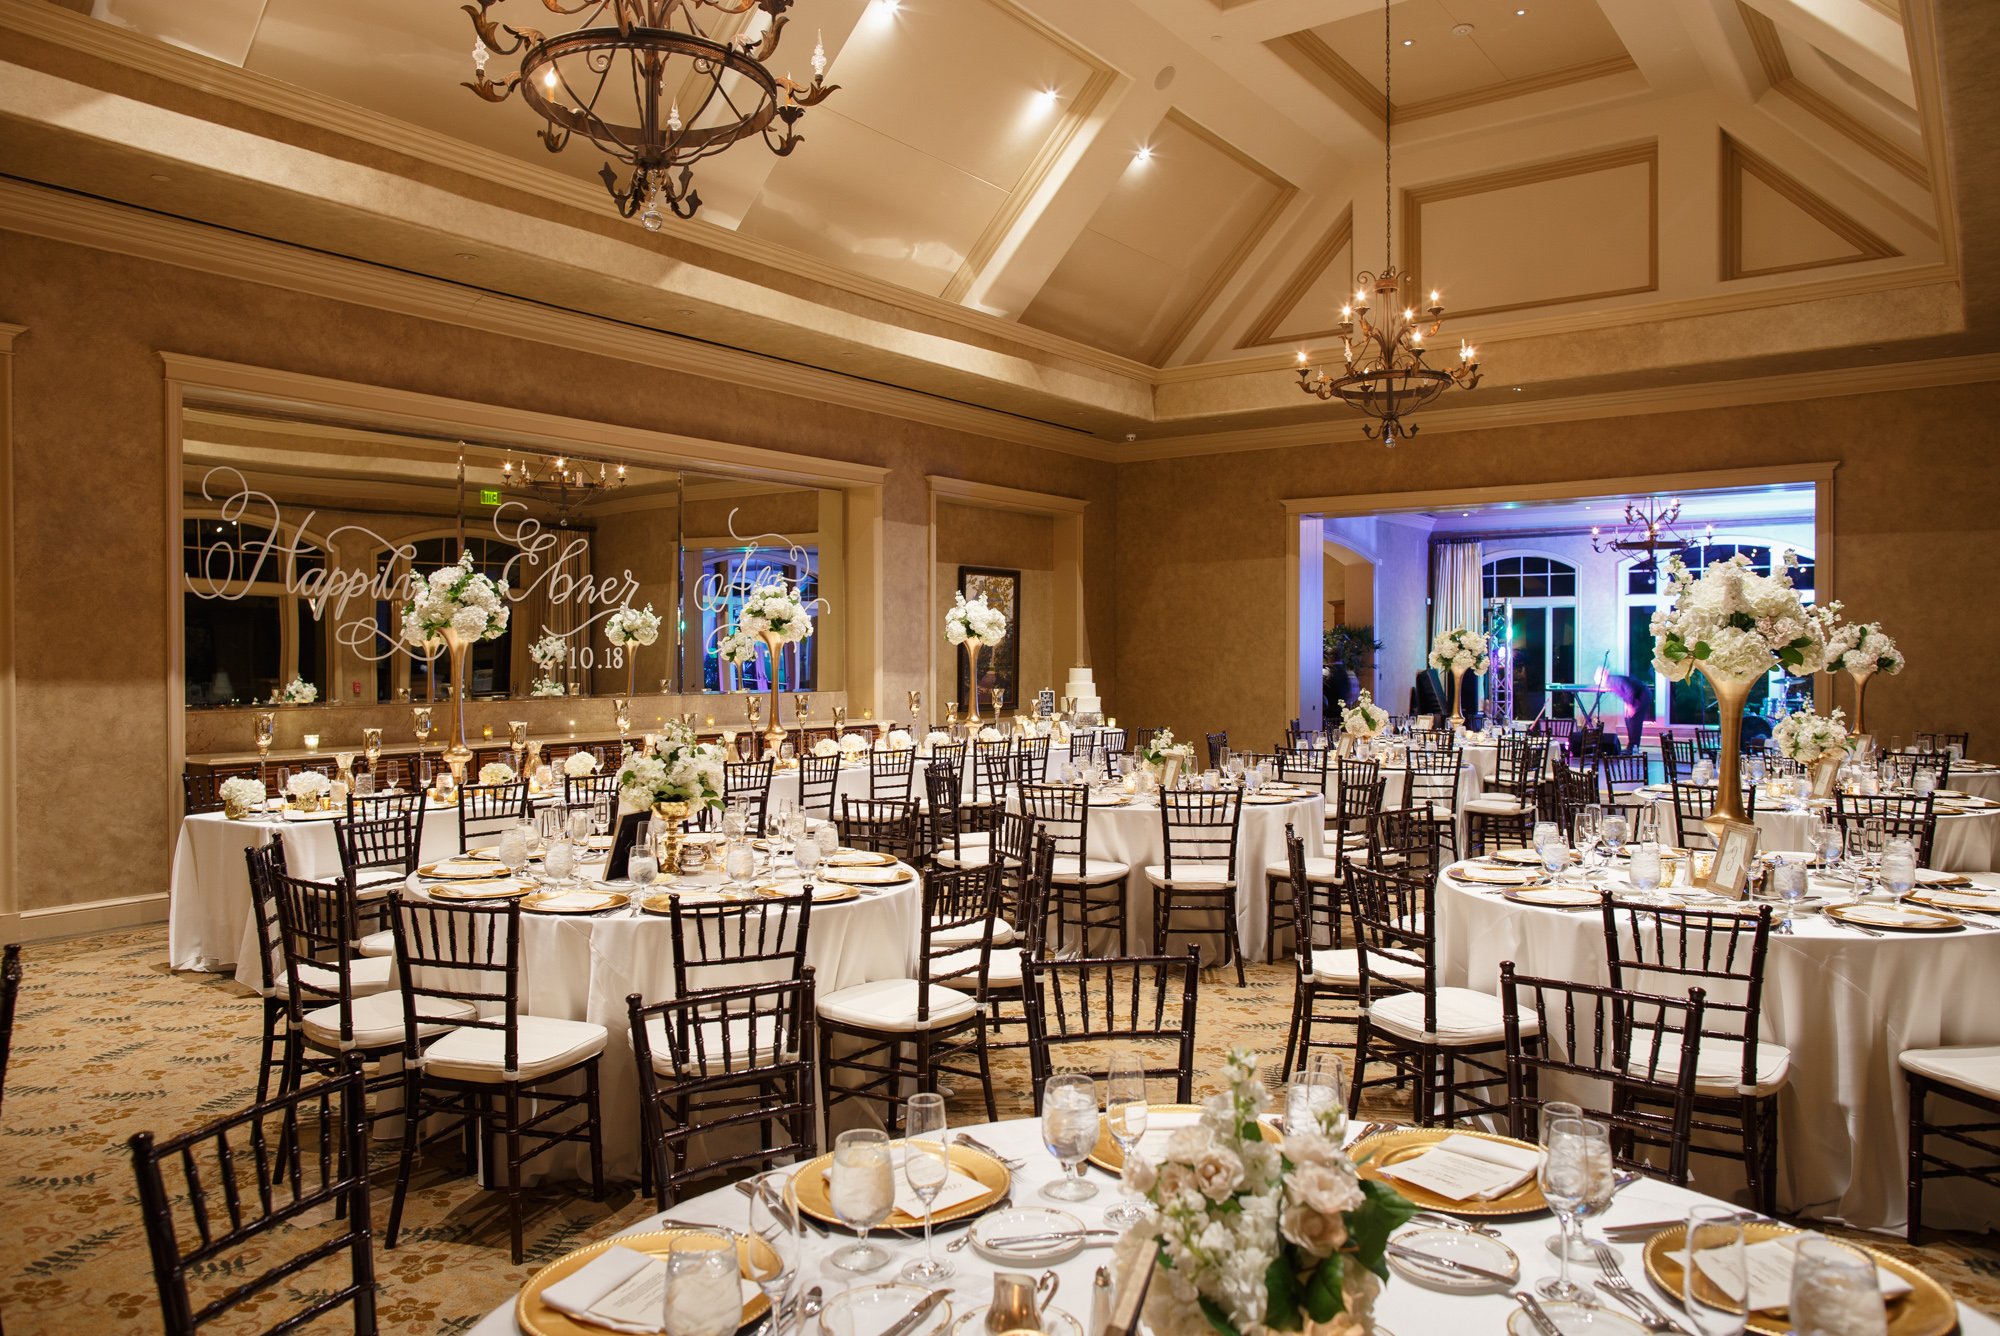 Royal Oaks Country Club - Venues - Weddings in Houston